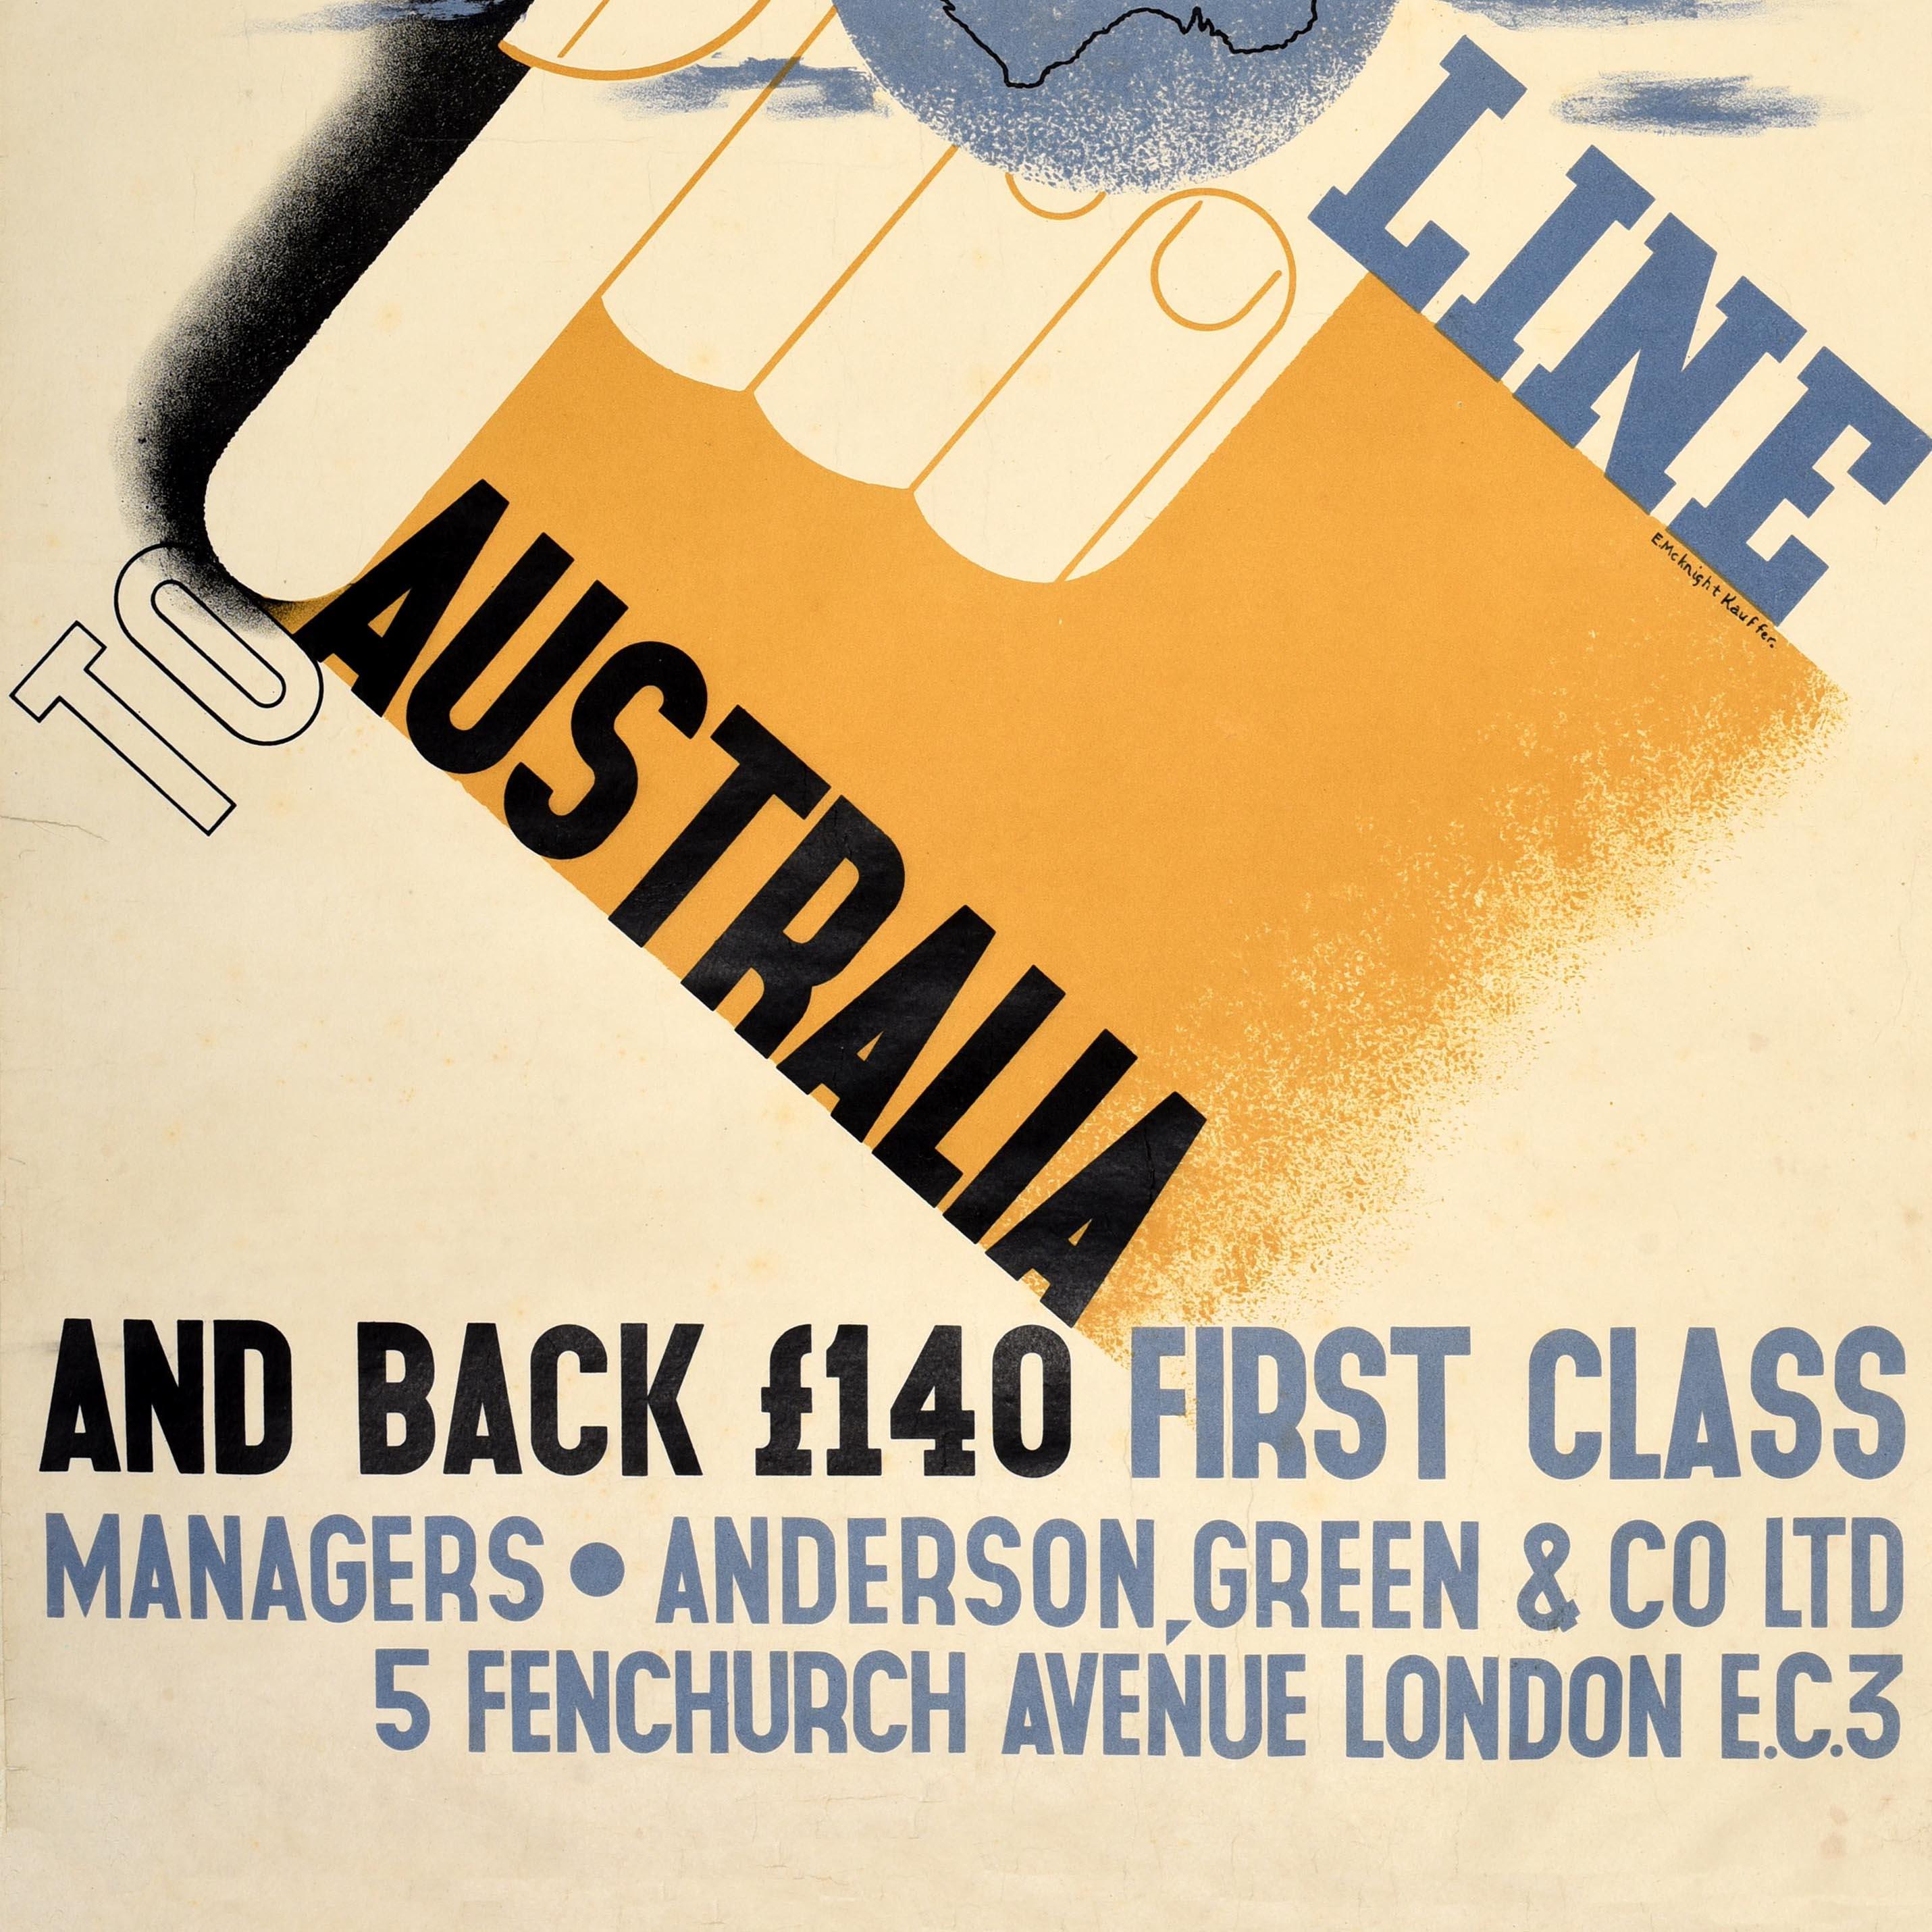 Original Vintage-Reiseplakat - Orient Line to Australia - mit einem großartigen Entwurf von einem der bekanntesten Plakatkünstler des 20. Jahrhunderts Edward McKnight Kauffer (1890-1954), der den Titeltext diagonal durch eine Hand zeigt, die einen